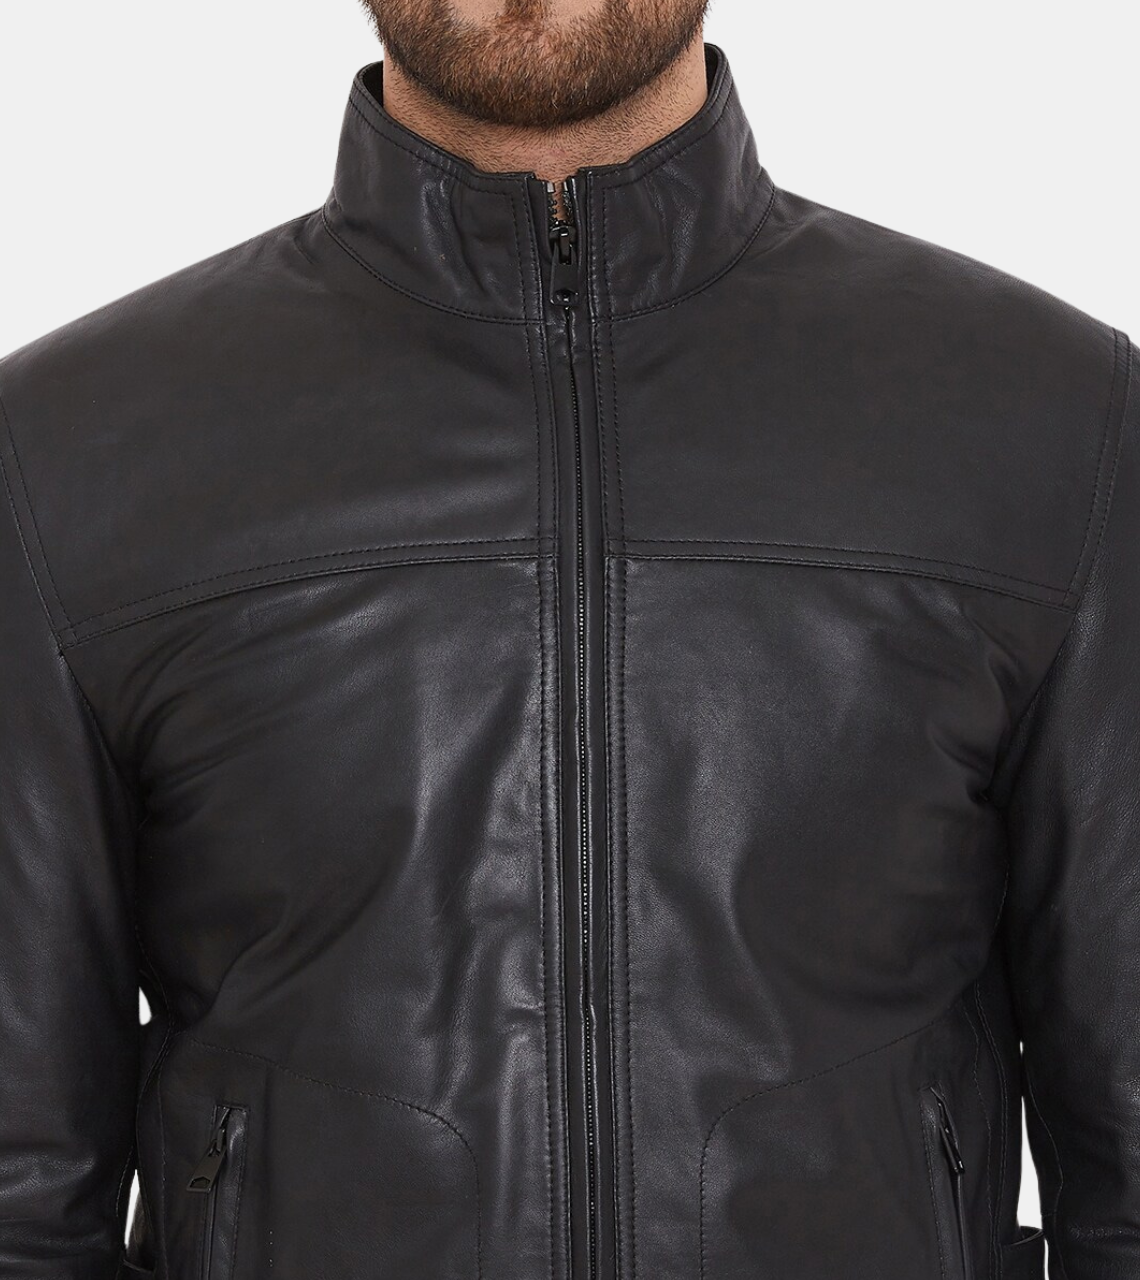  Sullivan Leather Jacket 